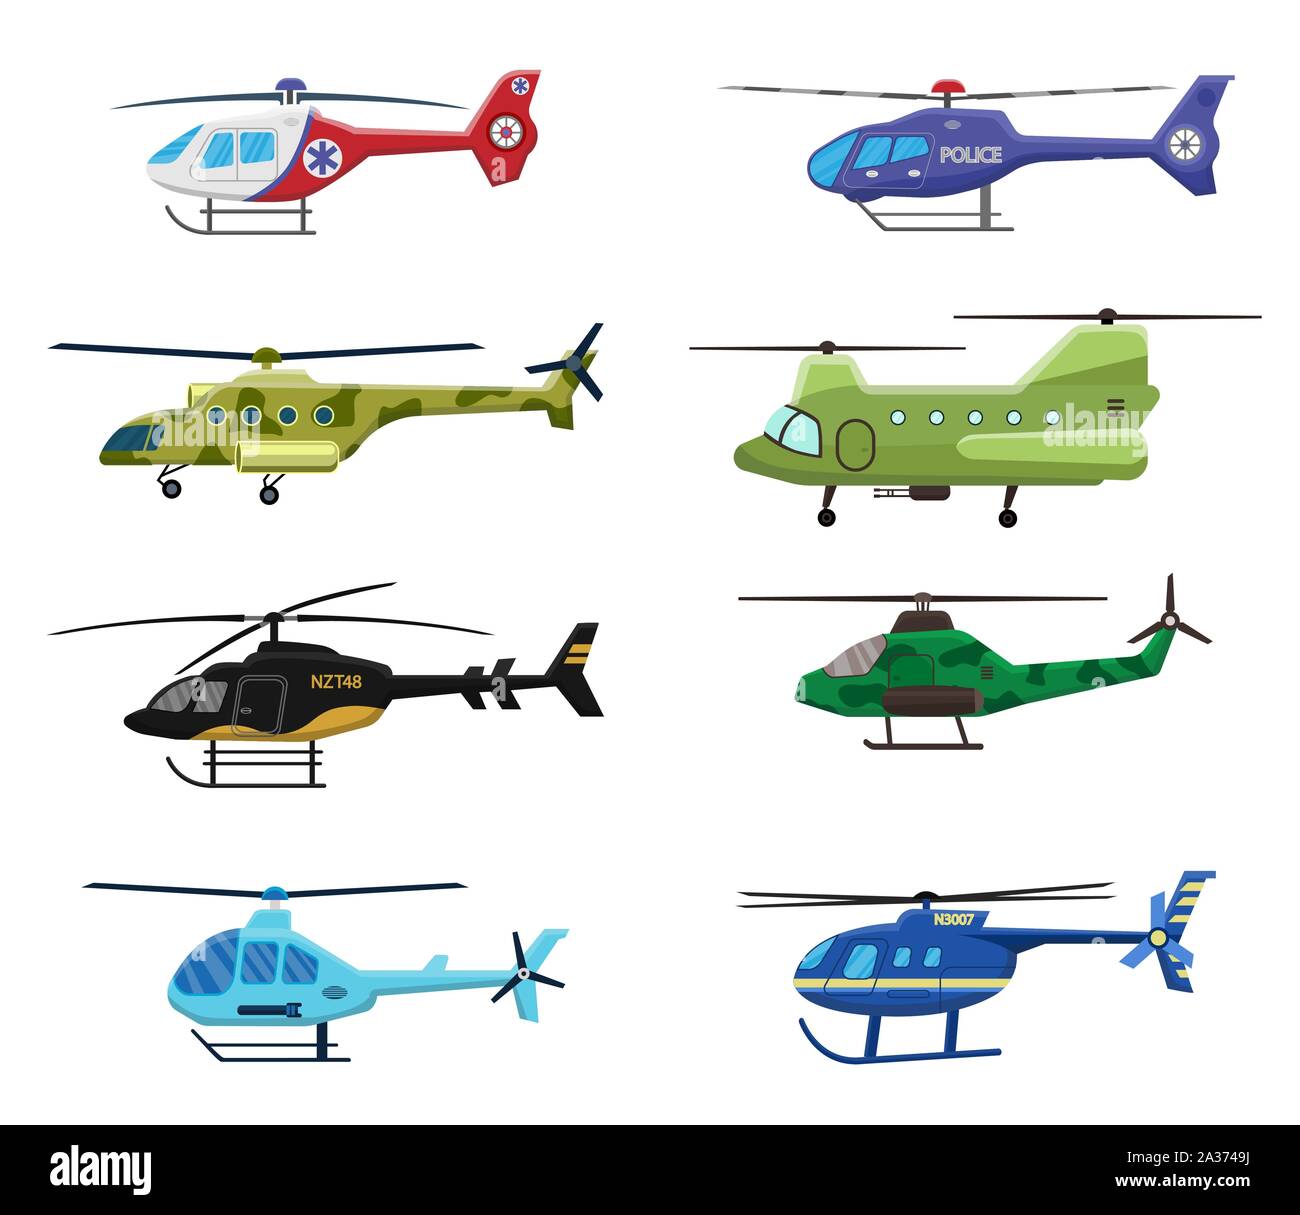 L'armée, la police et les hélicoptères médicaux icon set isolé sur fond blanc, les transports aériens, aviation, vector illustration. Illustration de Vecteur